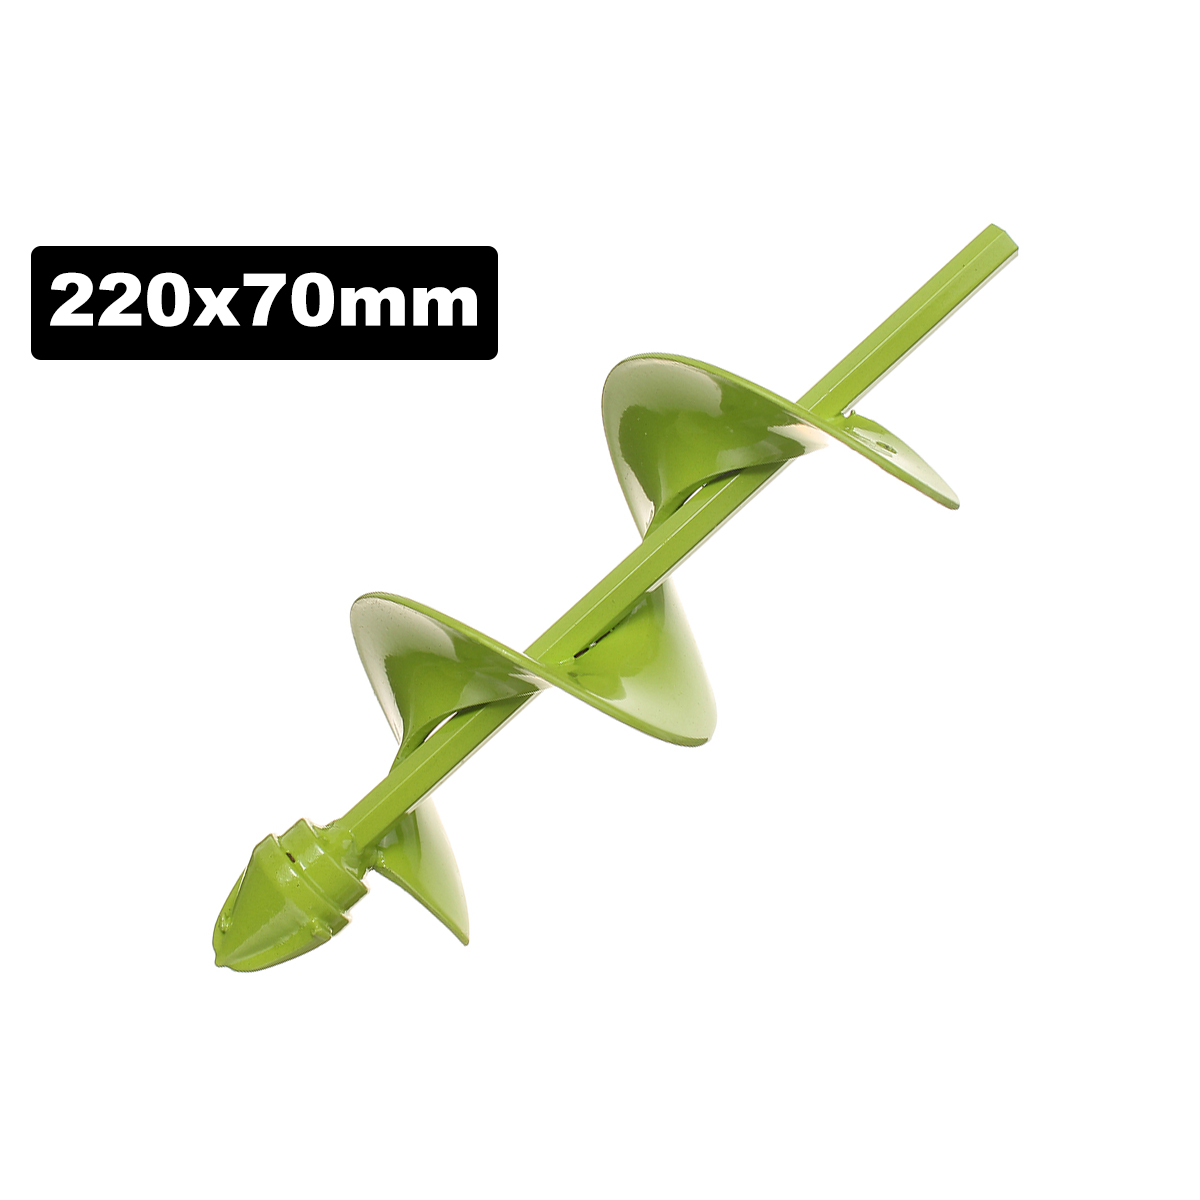 70mm-Wide-Green-Garden-Auger-Drill-Bit-Electric-Drill-Bit-Digs-Hole-400220mm-Length-1578436-3